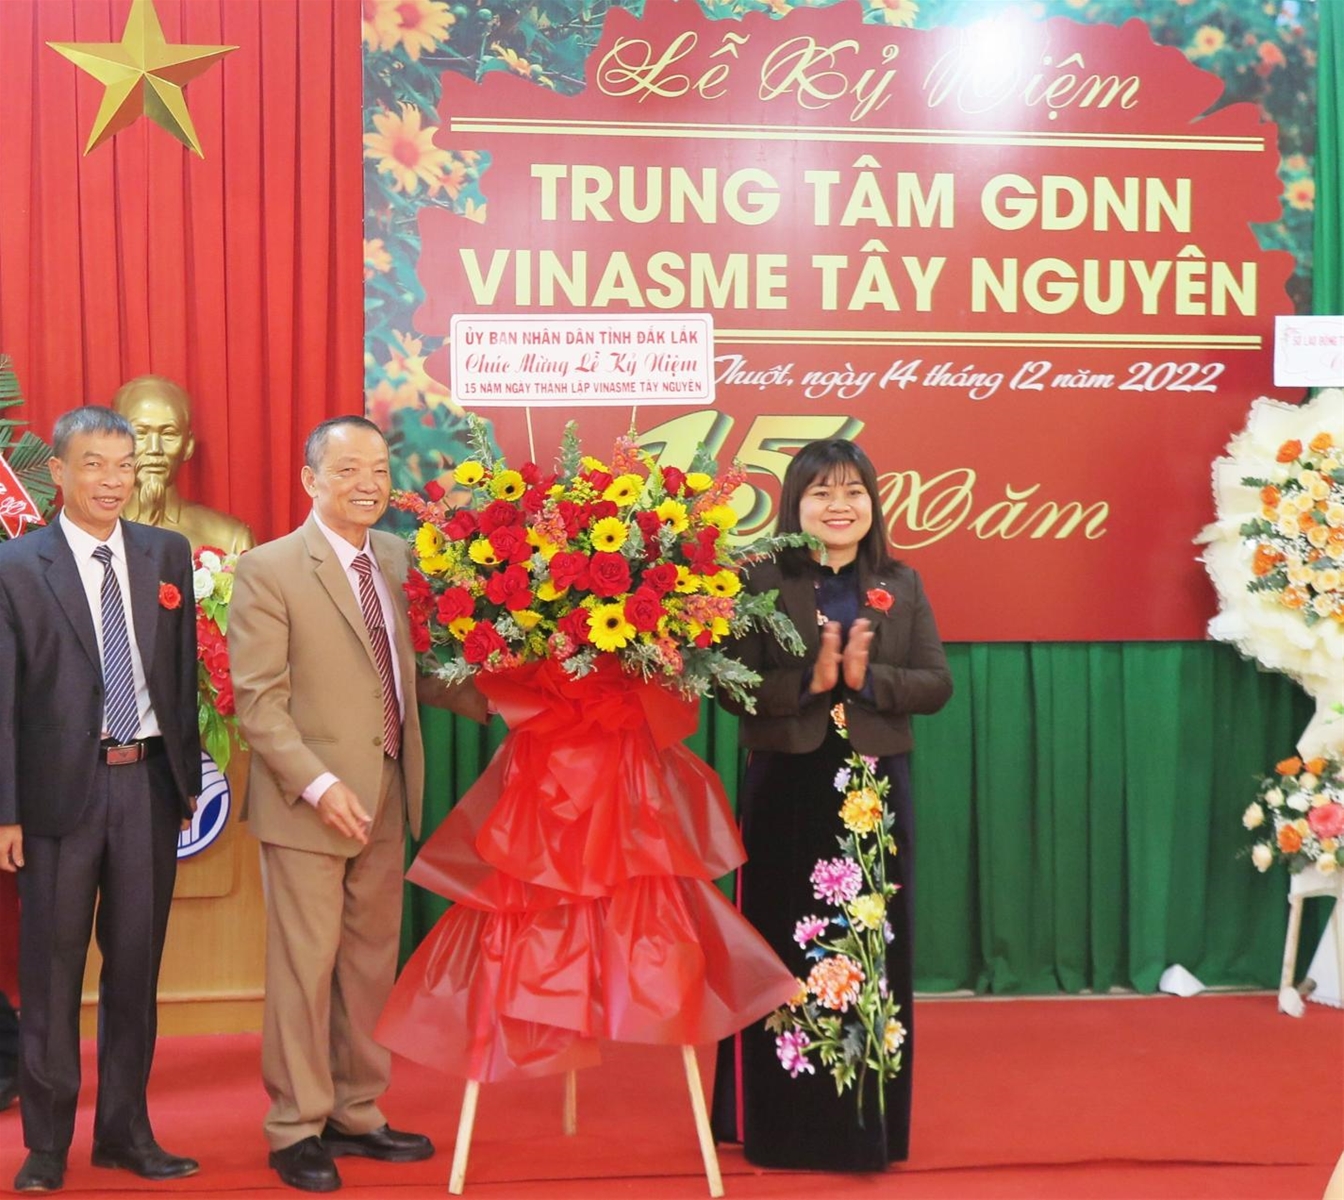 Lẵng hoa tươi thắm của UBND tỉnh Đăk Lăk gửi tặng TT GDNN VINASME Tây Nguyên nhân kỷ niệm 15 năm ngày thành lập TT (2007-2022).